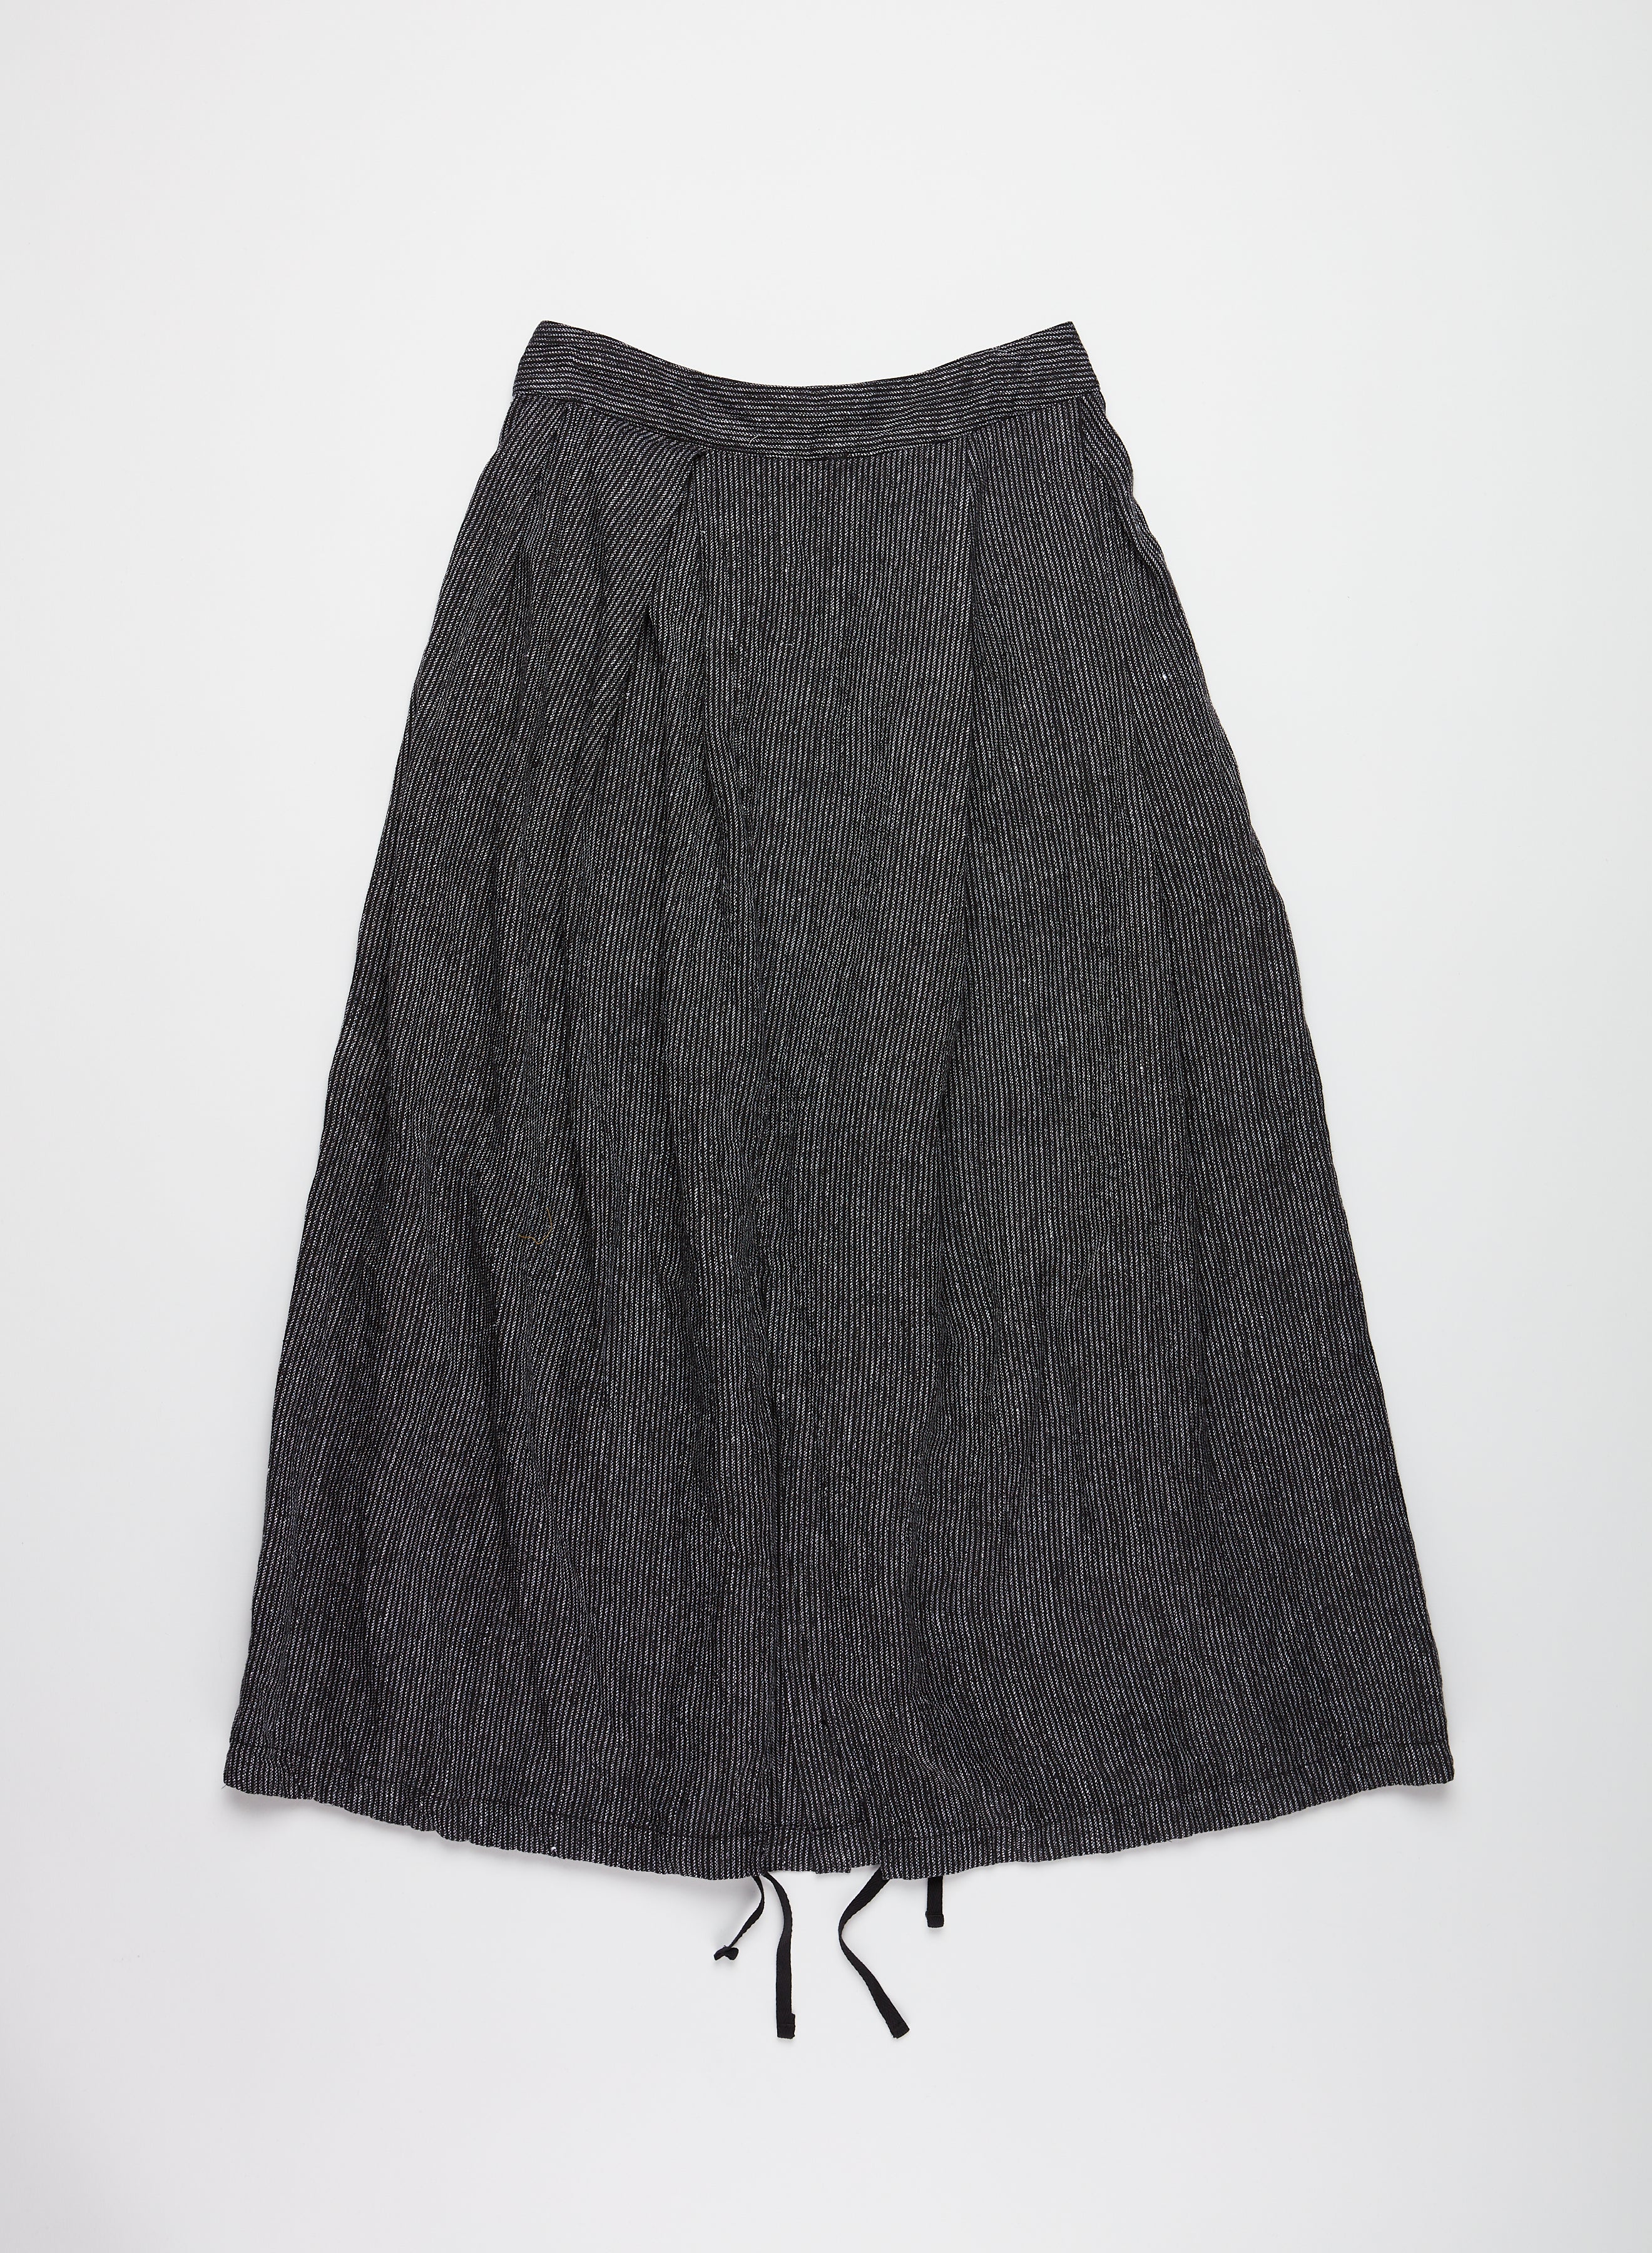 Tuck Skirt - Black / Grey Linen Stripe